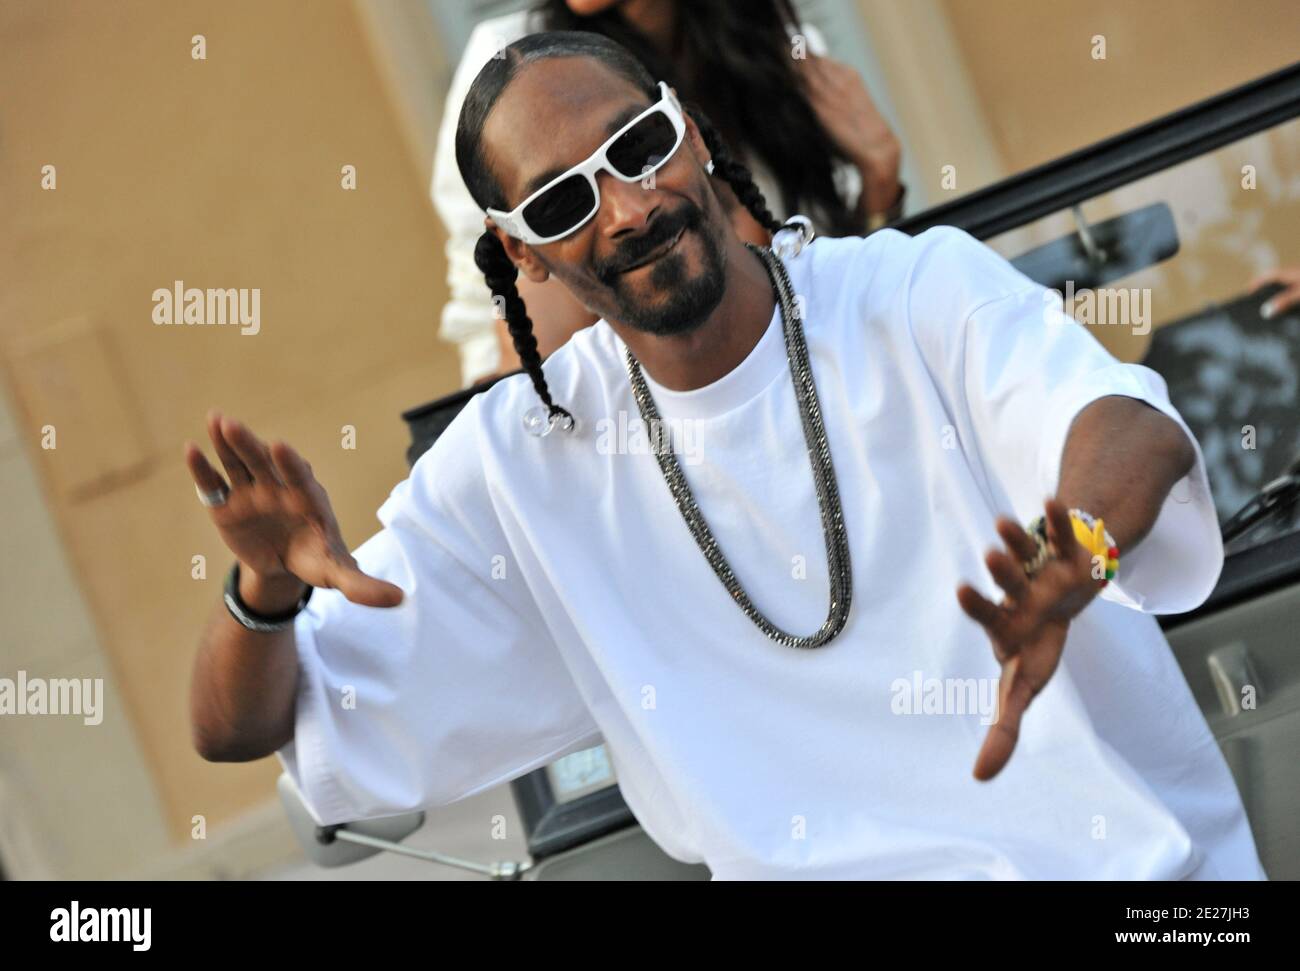 Le rappeur américain Snoop Dogg et l'hôte de la salle VIP Jean Roch filment  un clip vidéo devant l'ancien bâtiment de la Gendarmerie nationale à  Saint-Tropez, dans le sud de la France,